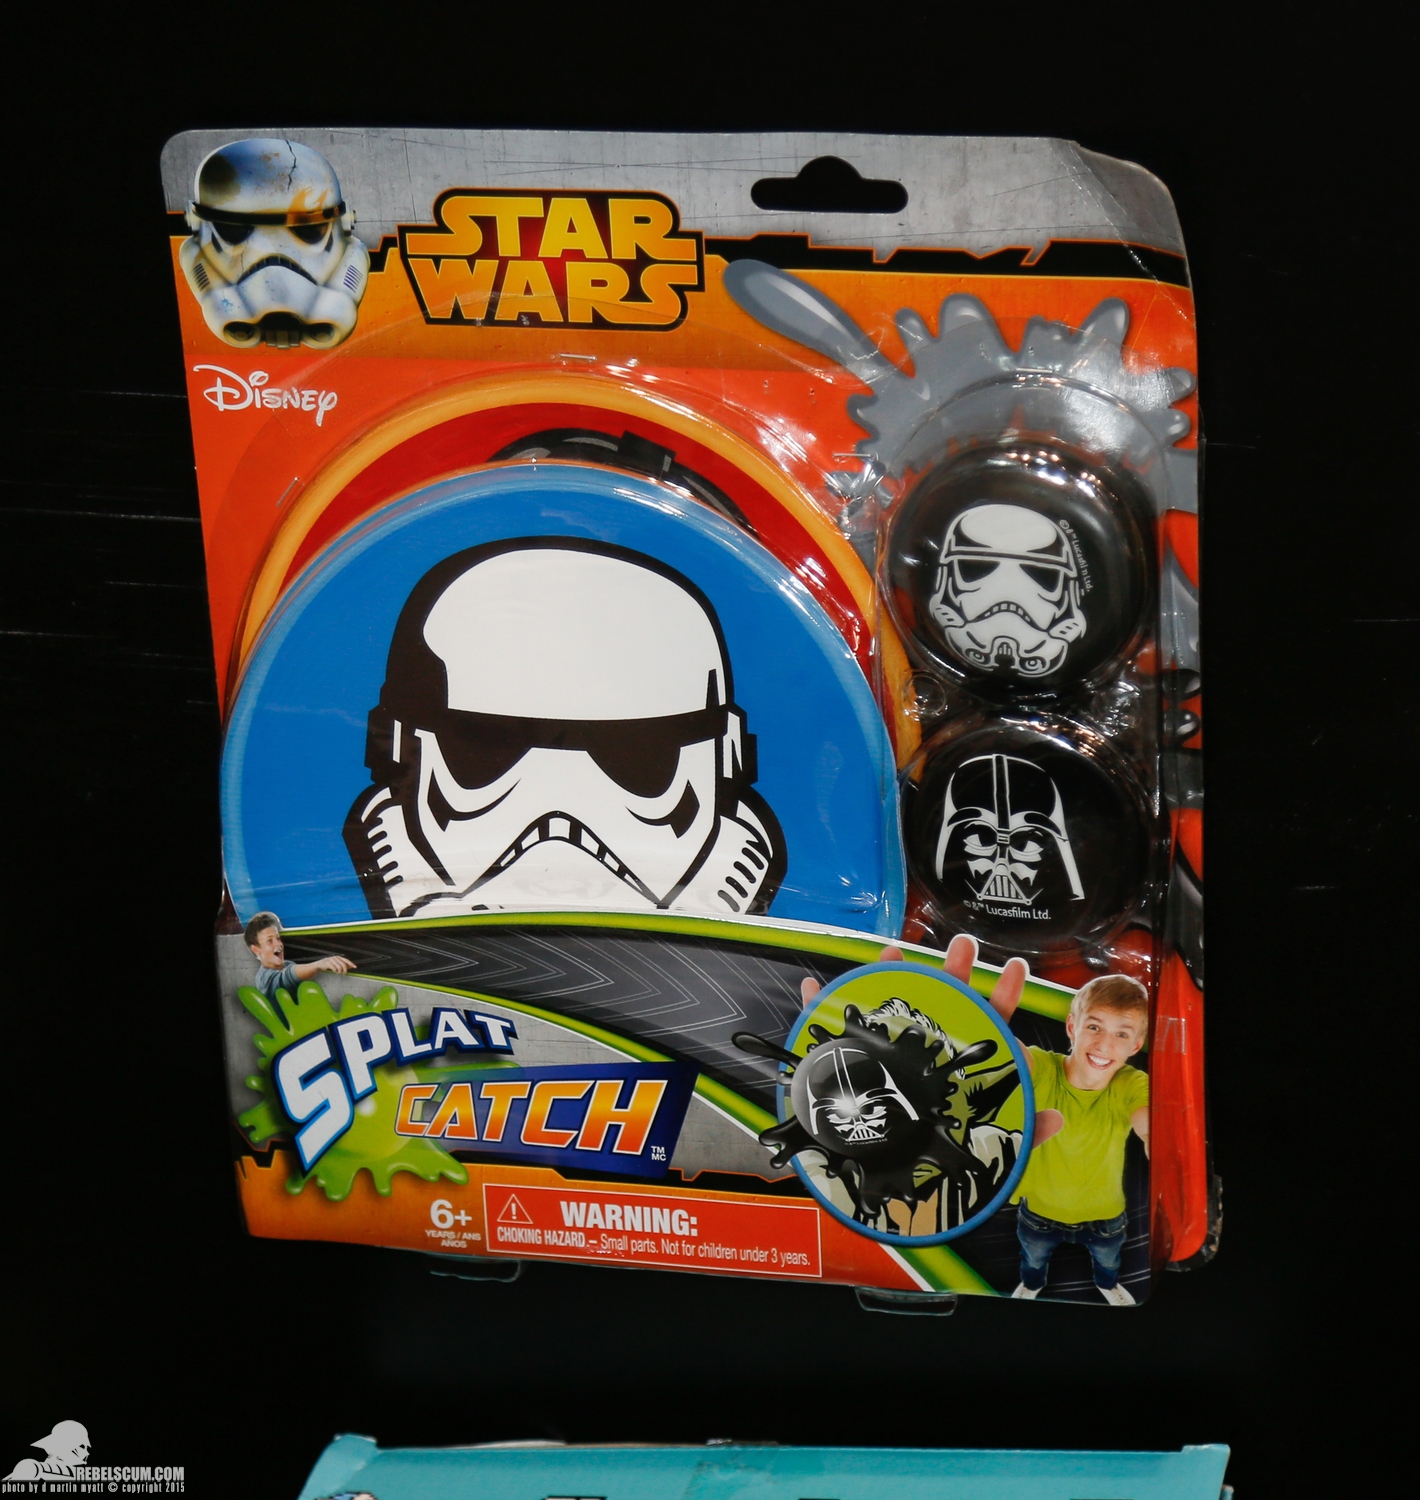 2015-International-Toy-Fair-Tech-4-Kids-Star-Wars-002.jpg